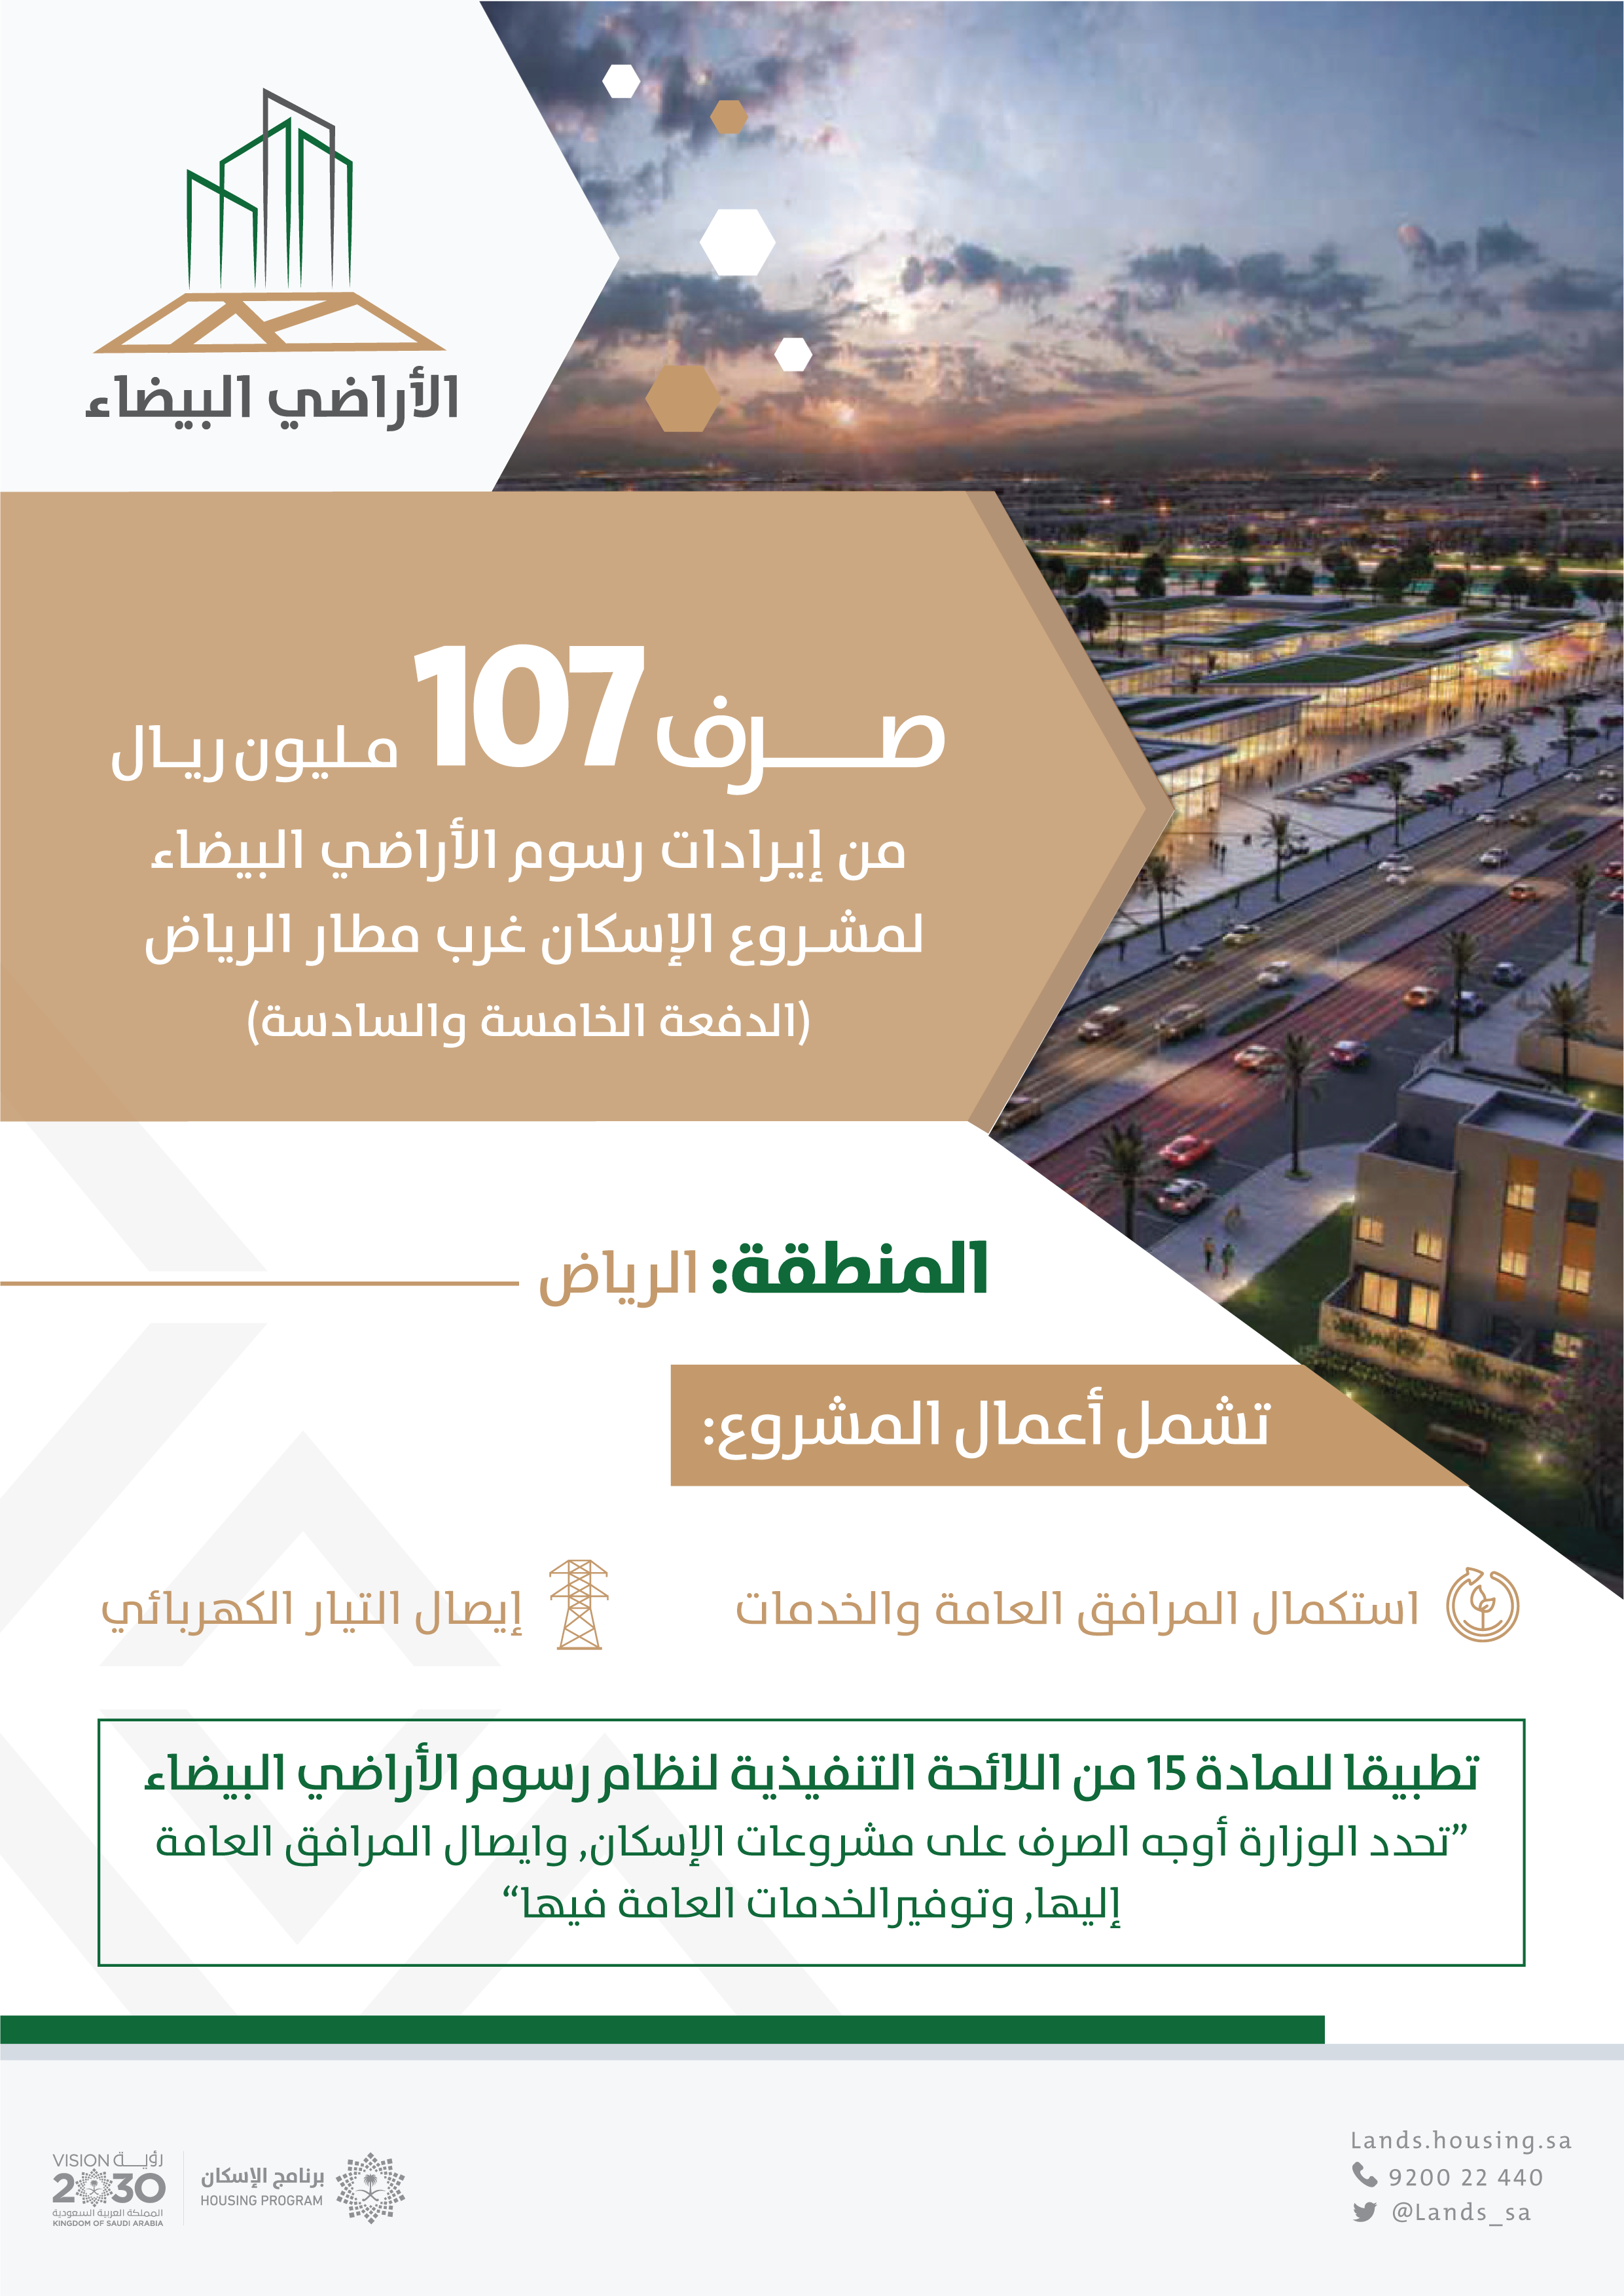 "الأراضي البيضاء" يُعلن صرف 107 مليون ريال لمشروع الإسكان غرب مطار الرياض